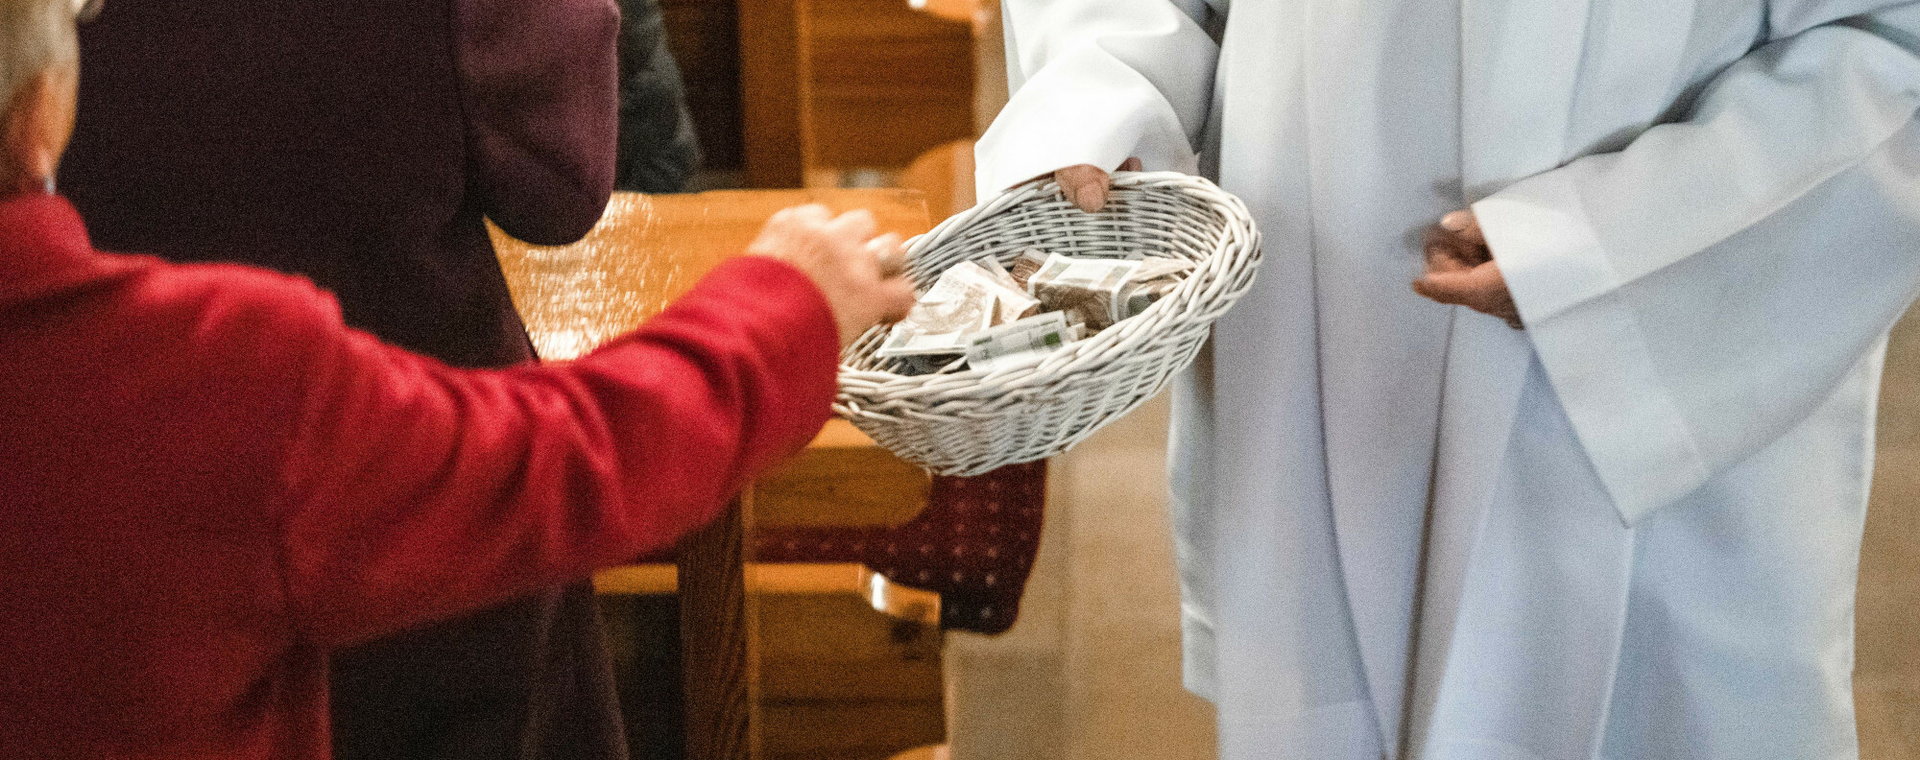 (Zdjęcie ilustracyjne) Kościelny zbiera pieniądze na tacę.